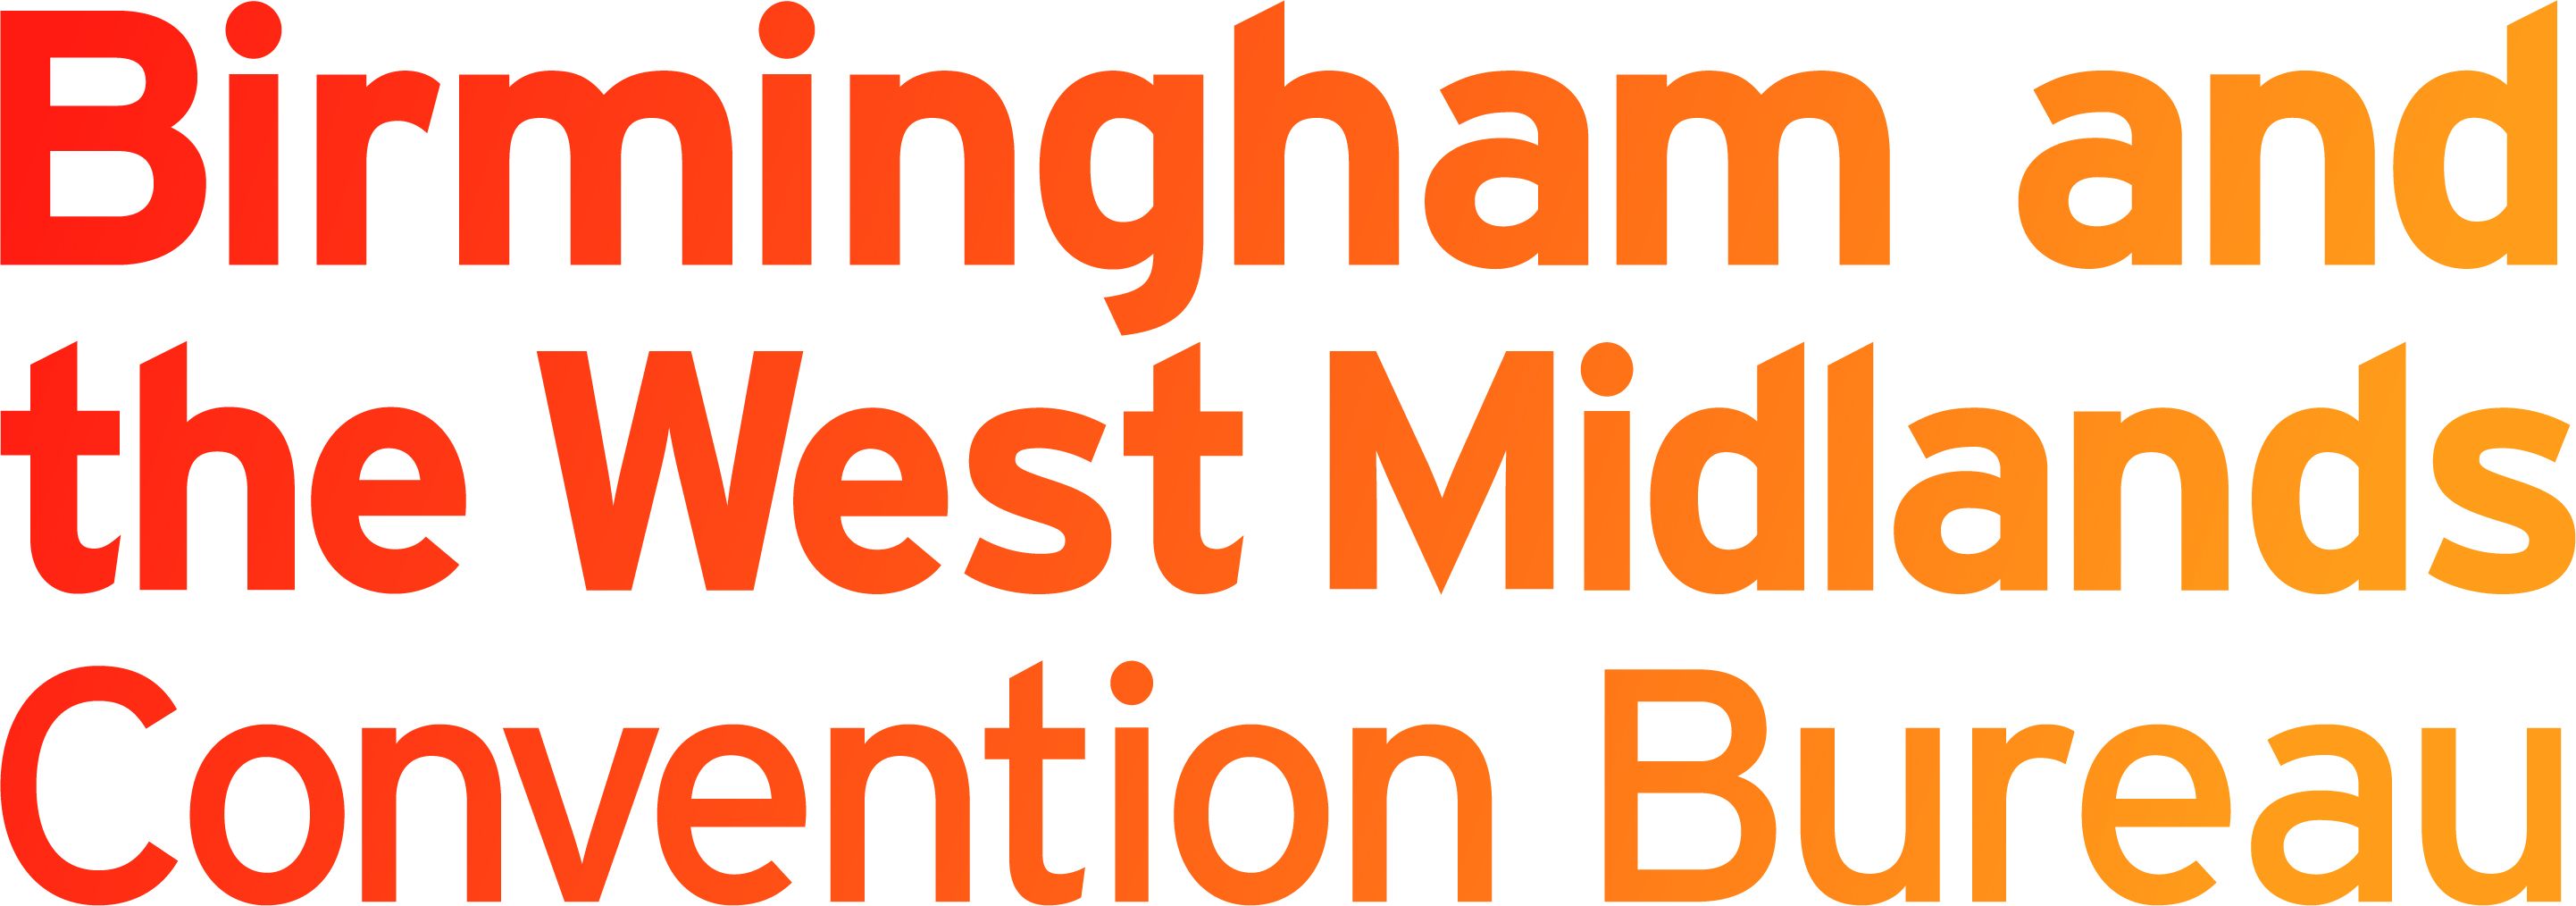 Birmingham & the West Midlands Convention Bureau